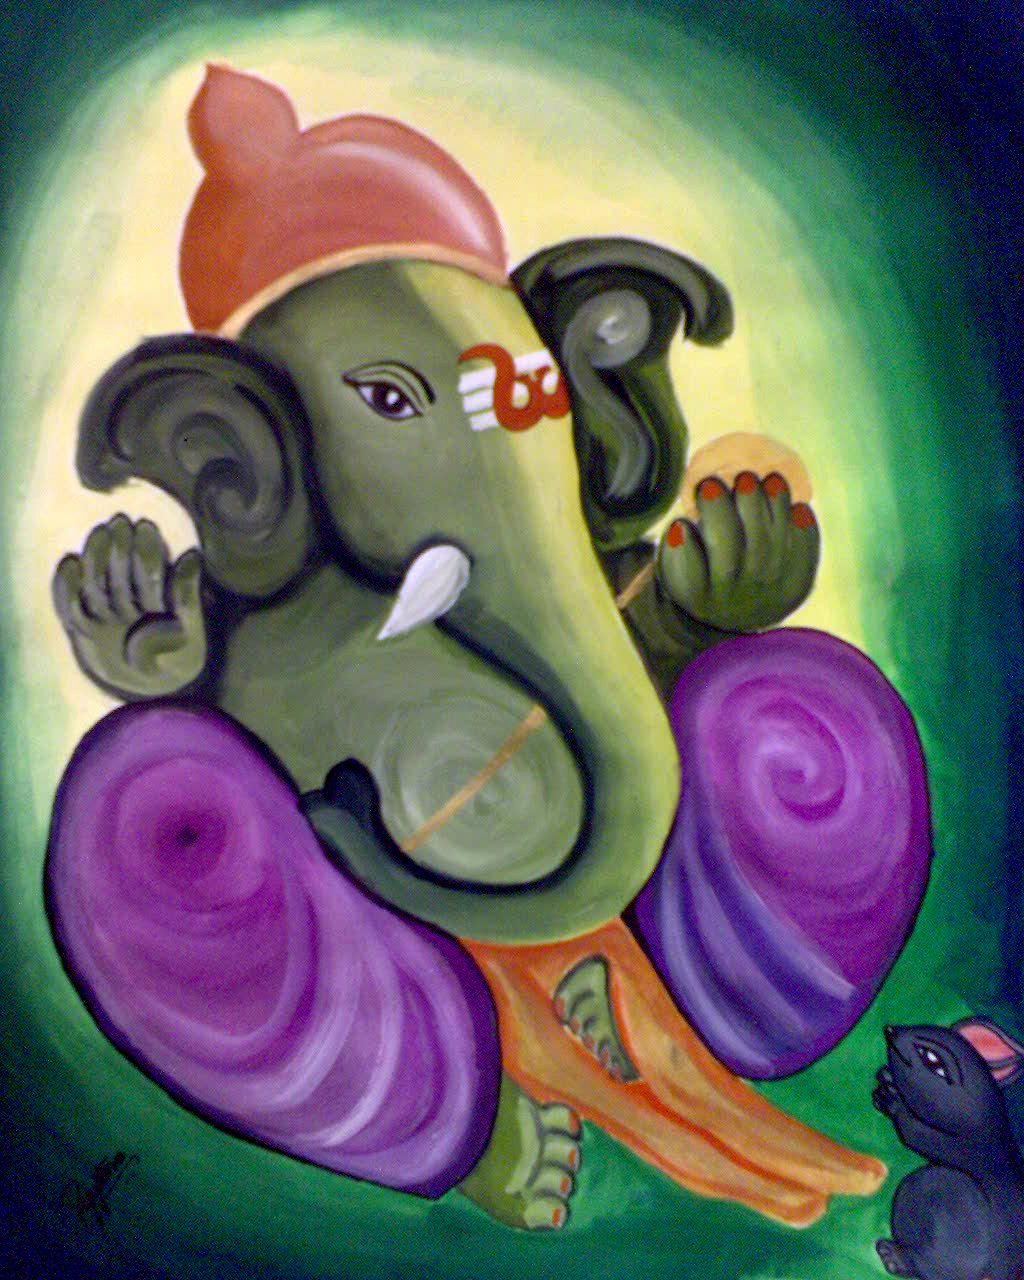 Painting Lord Ganesha